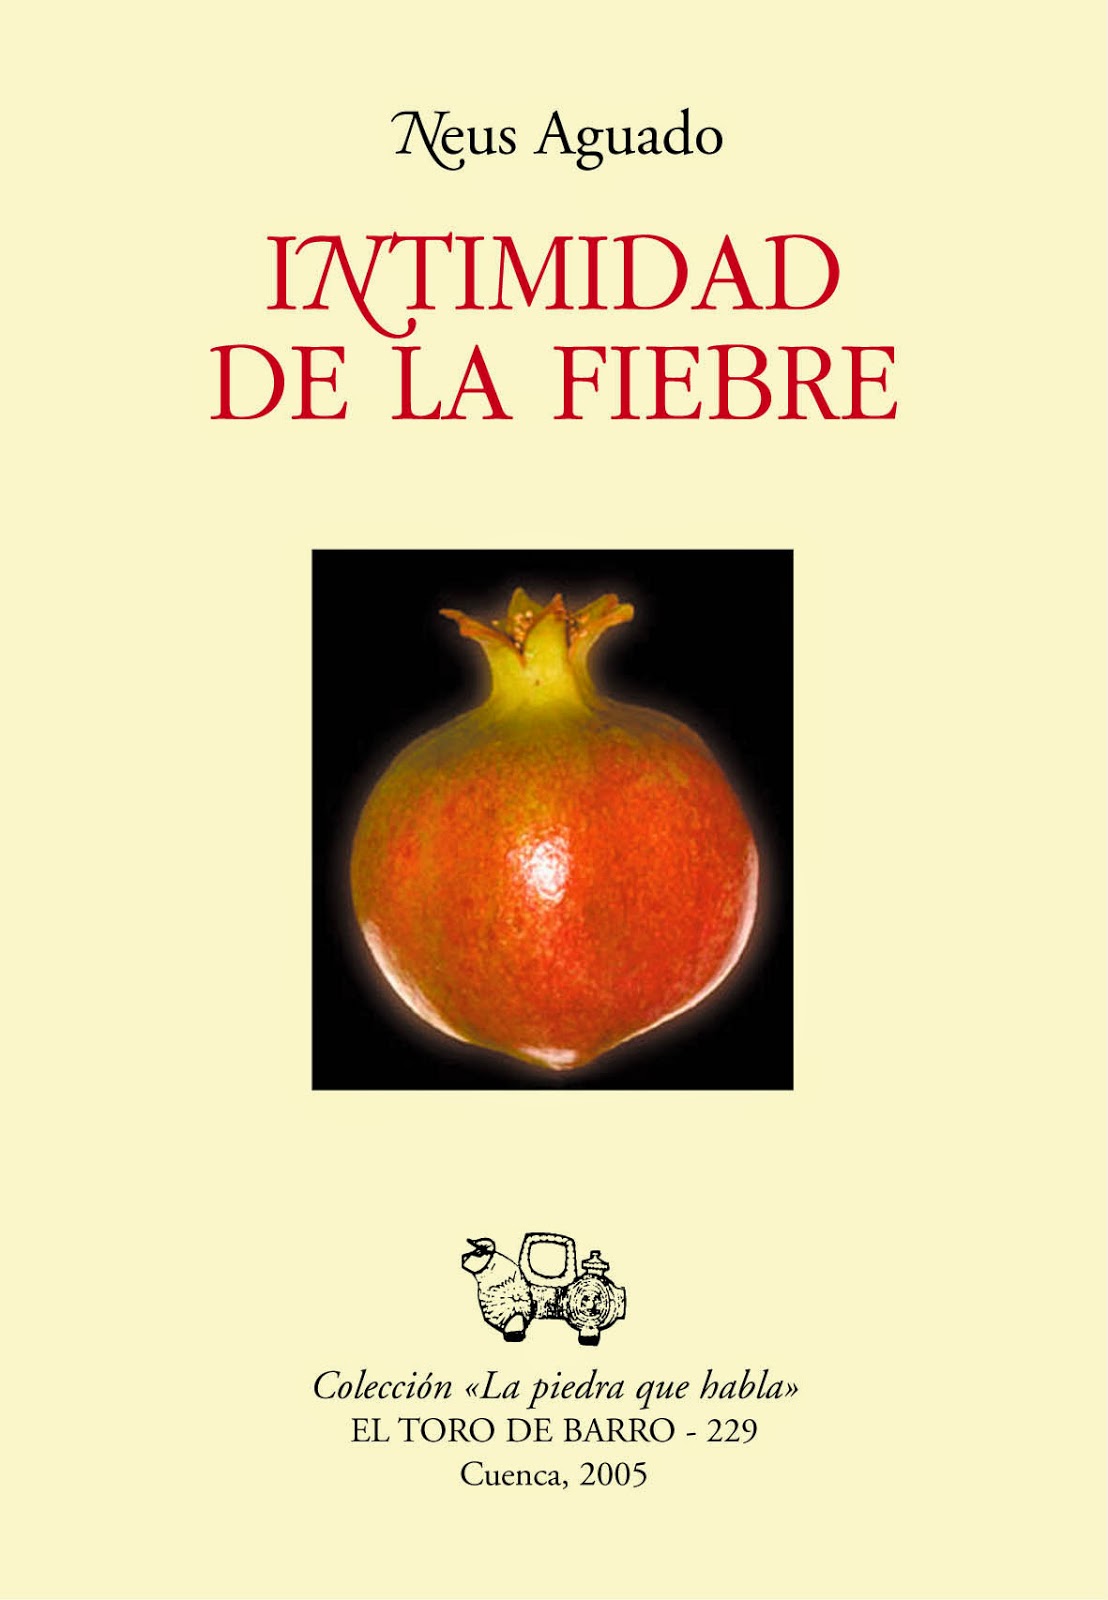 Neus Aguado, "Intimidad de la fiebre", col. La piedra que habla, Ed. El toro de barro, Tarancón de Cuenca, 2005